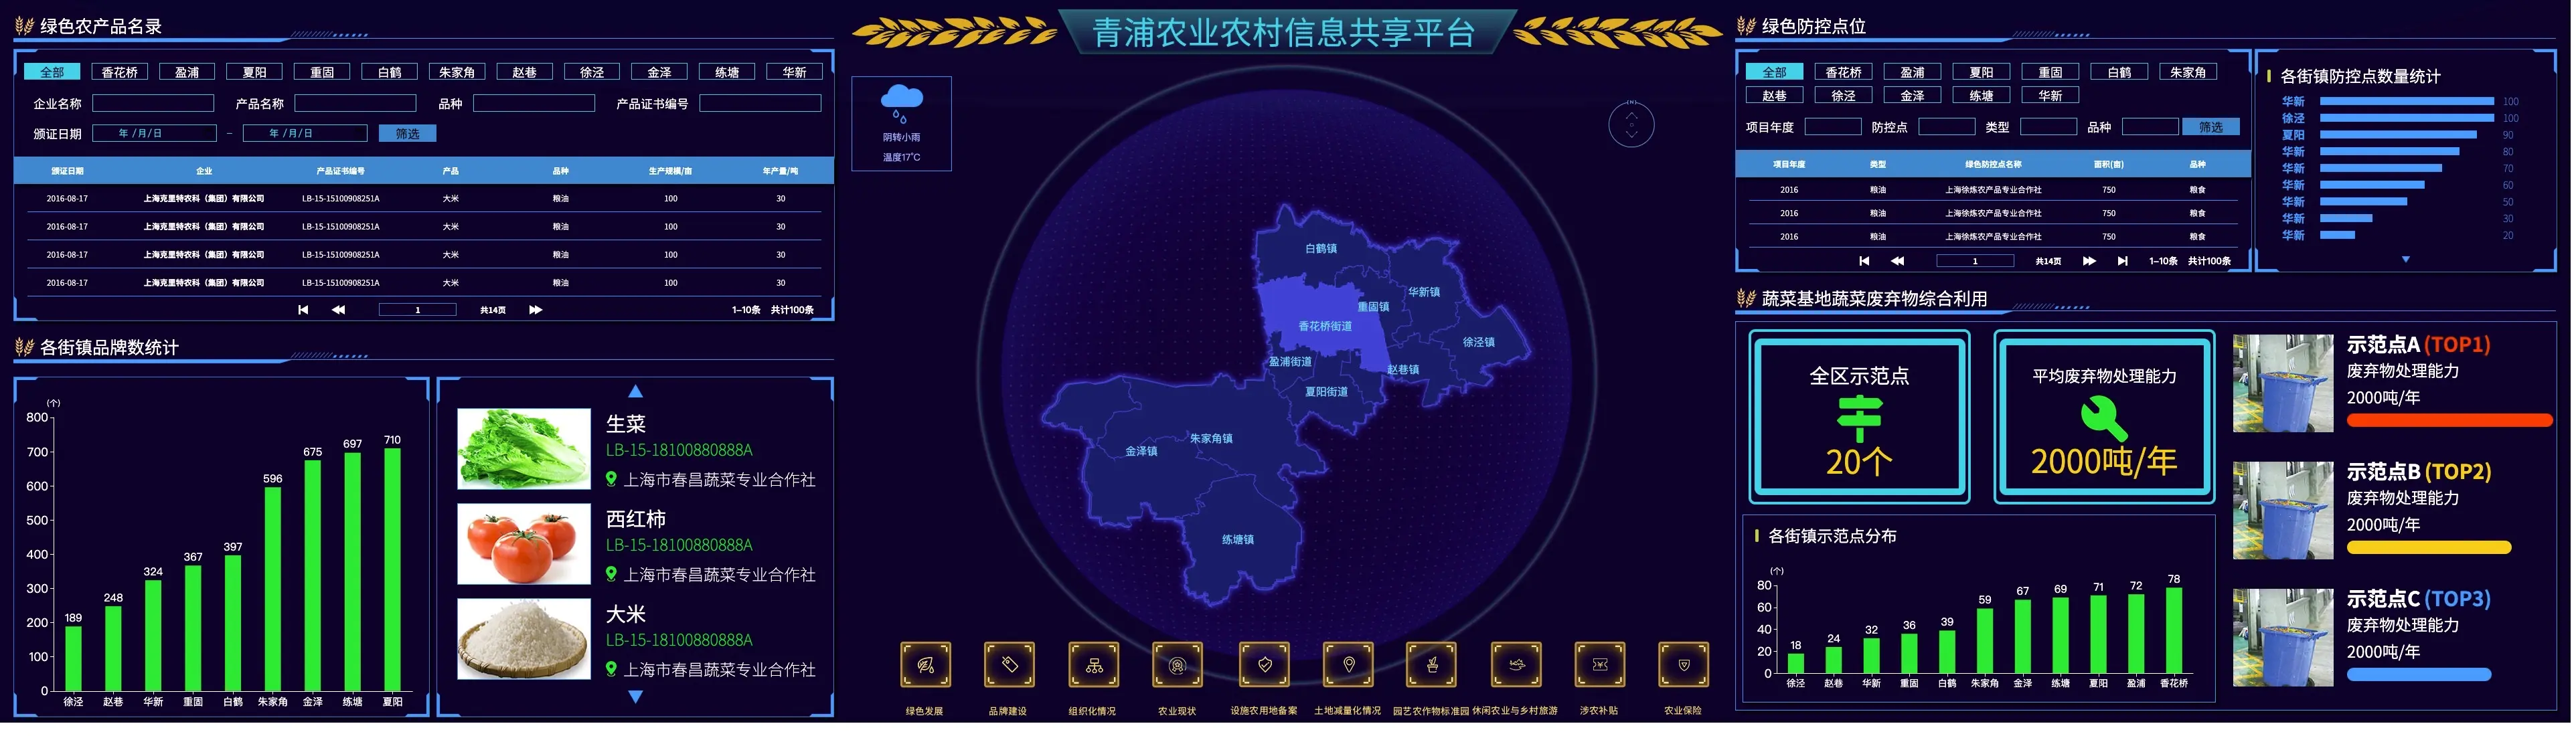 数据可视化大屏 青浦农业农村信息共享平台